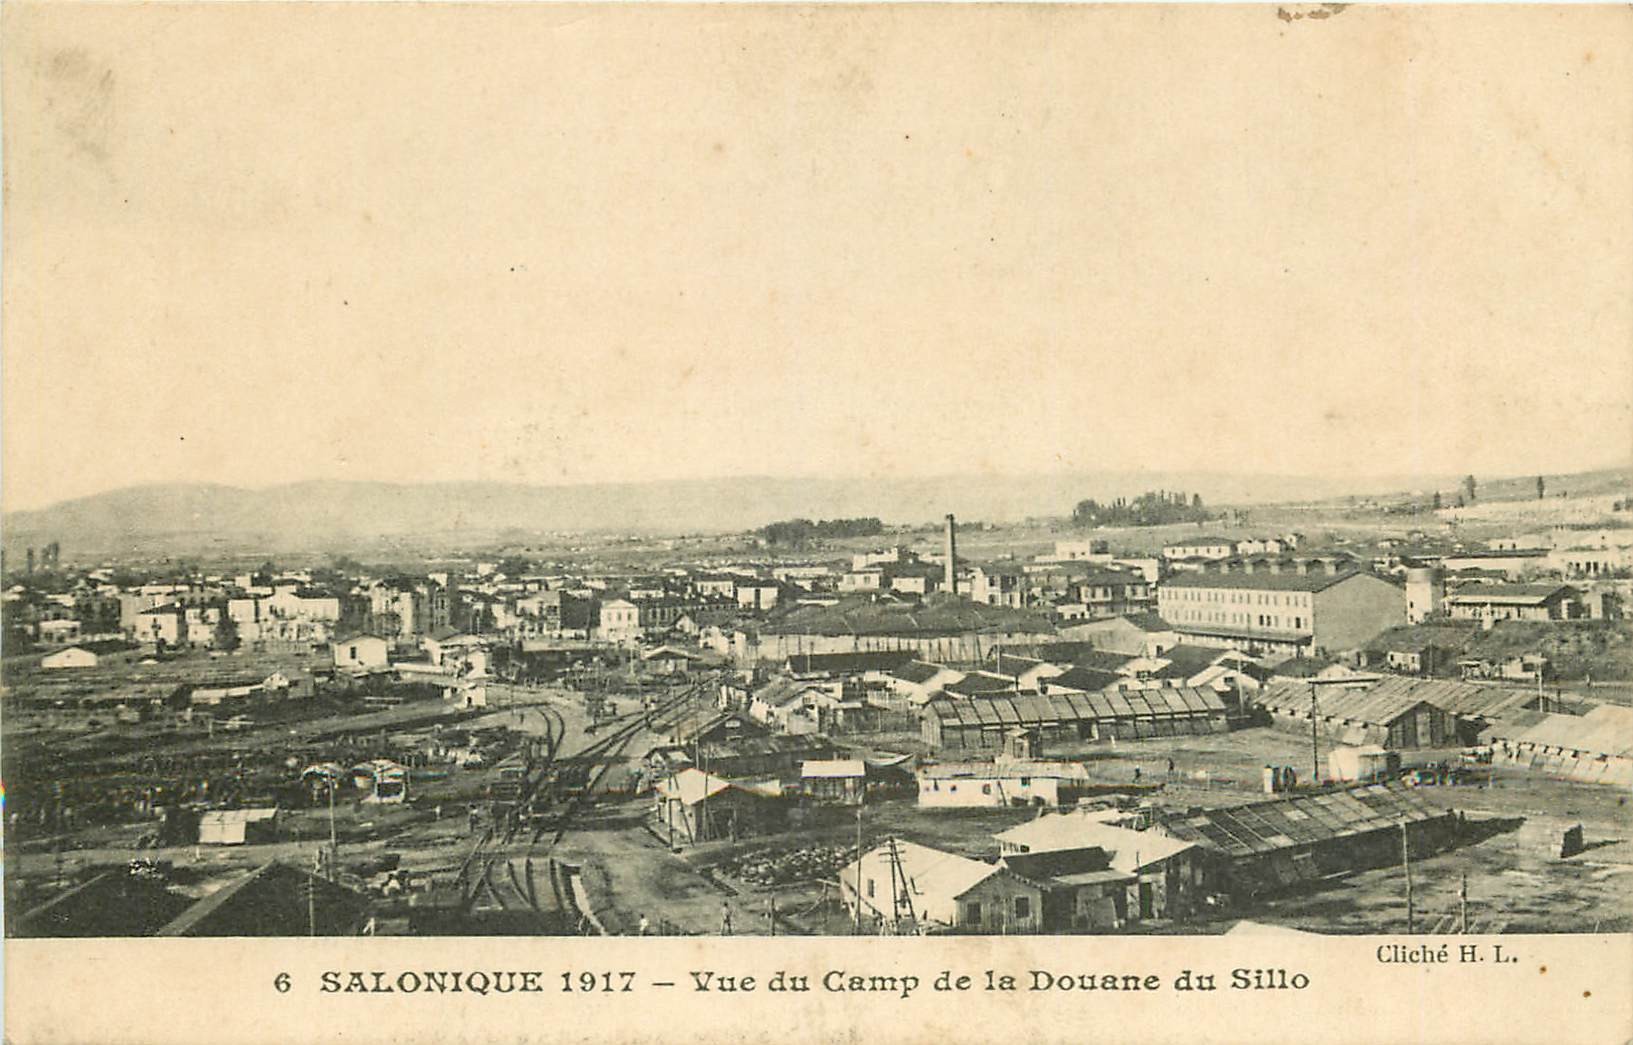 WW SALONIQUE. Camp de la Douane du Sillo en Grèce 1918